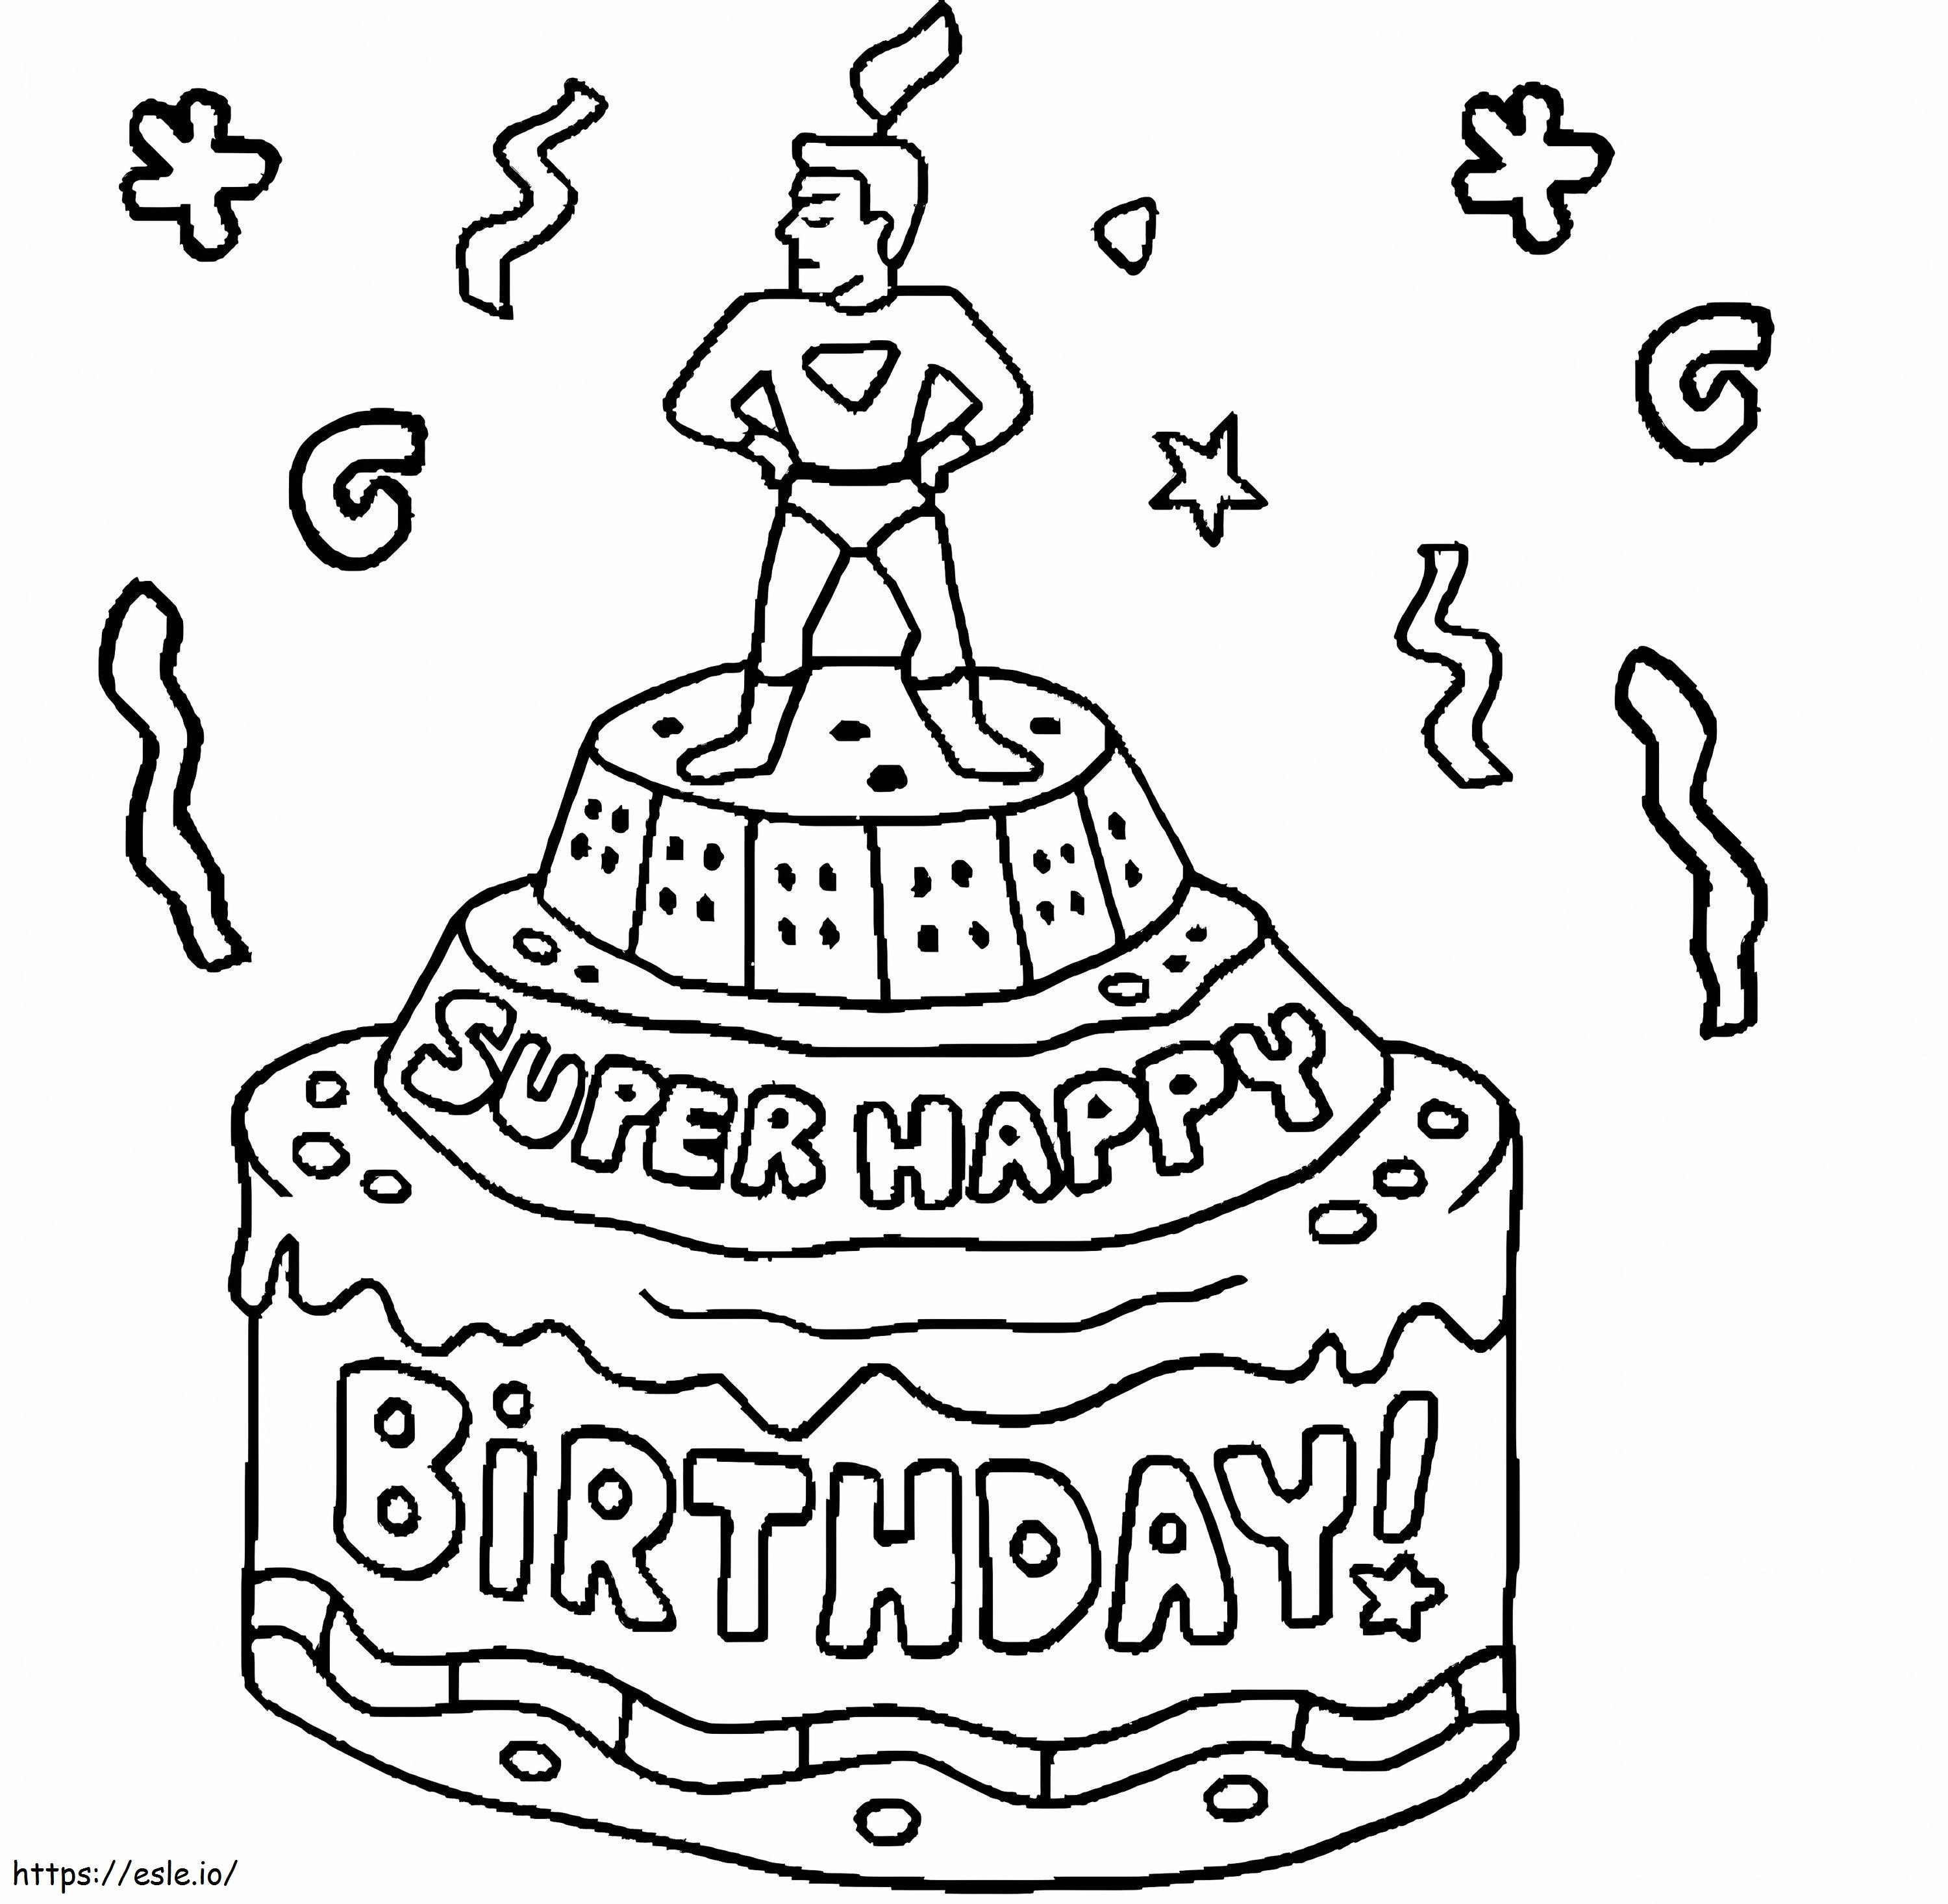 Super Happy Birthday-Kuchen ausmalbilder